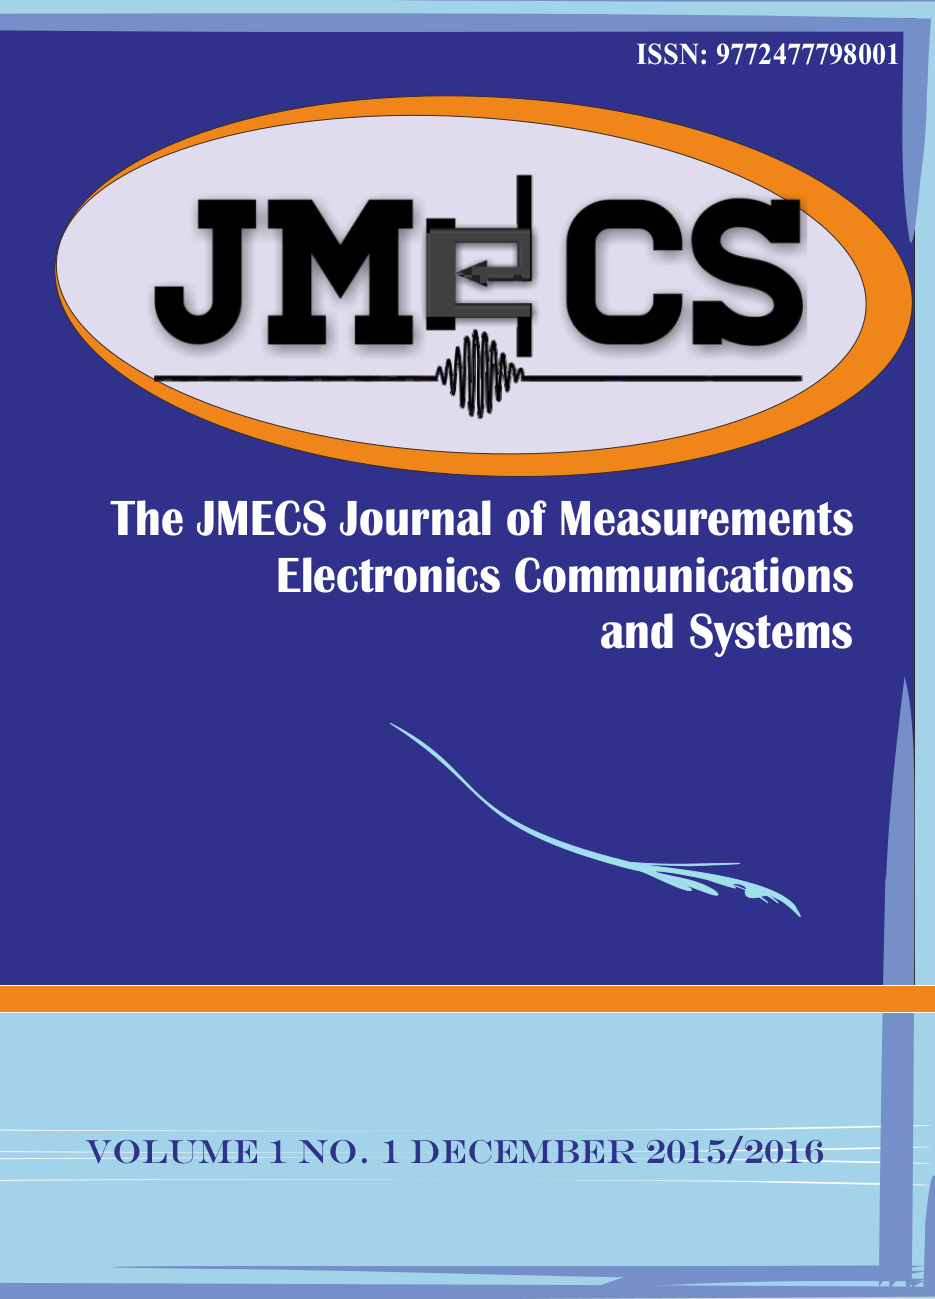 JMECS Vol.1 No.1 cover